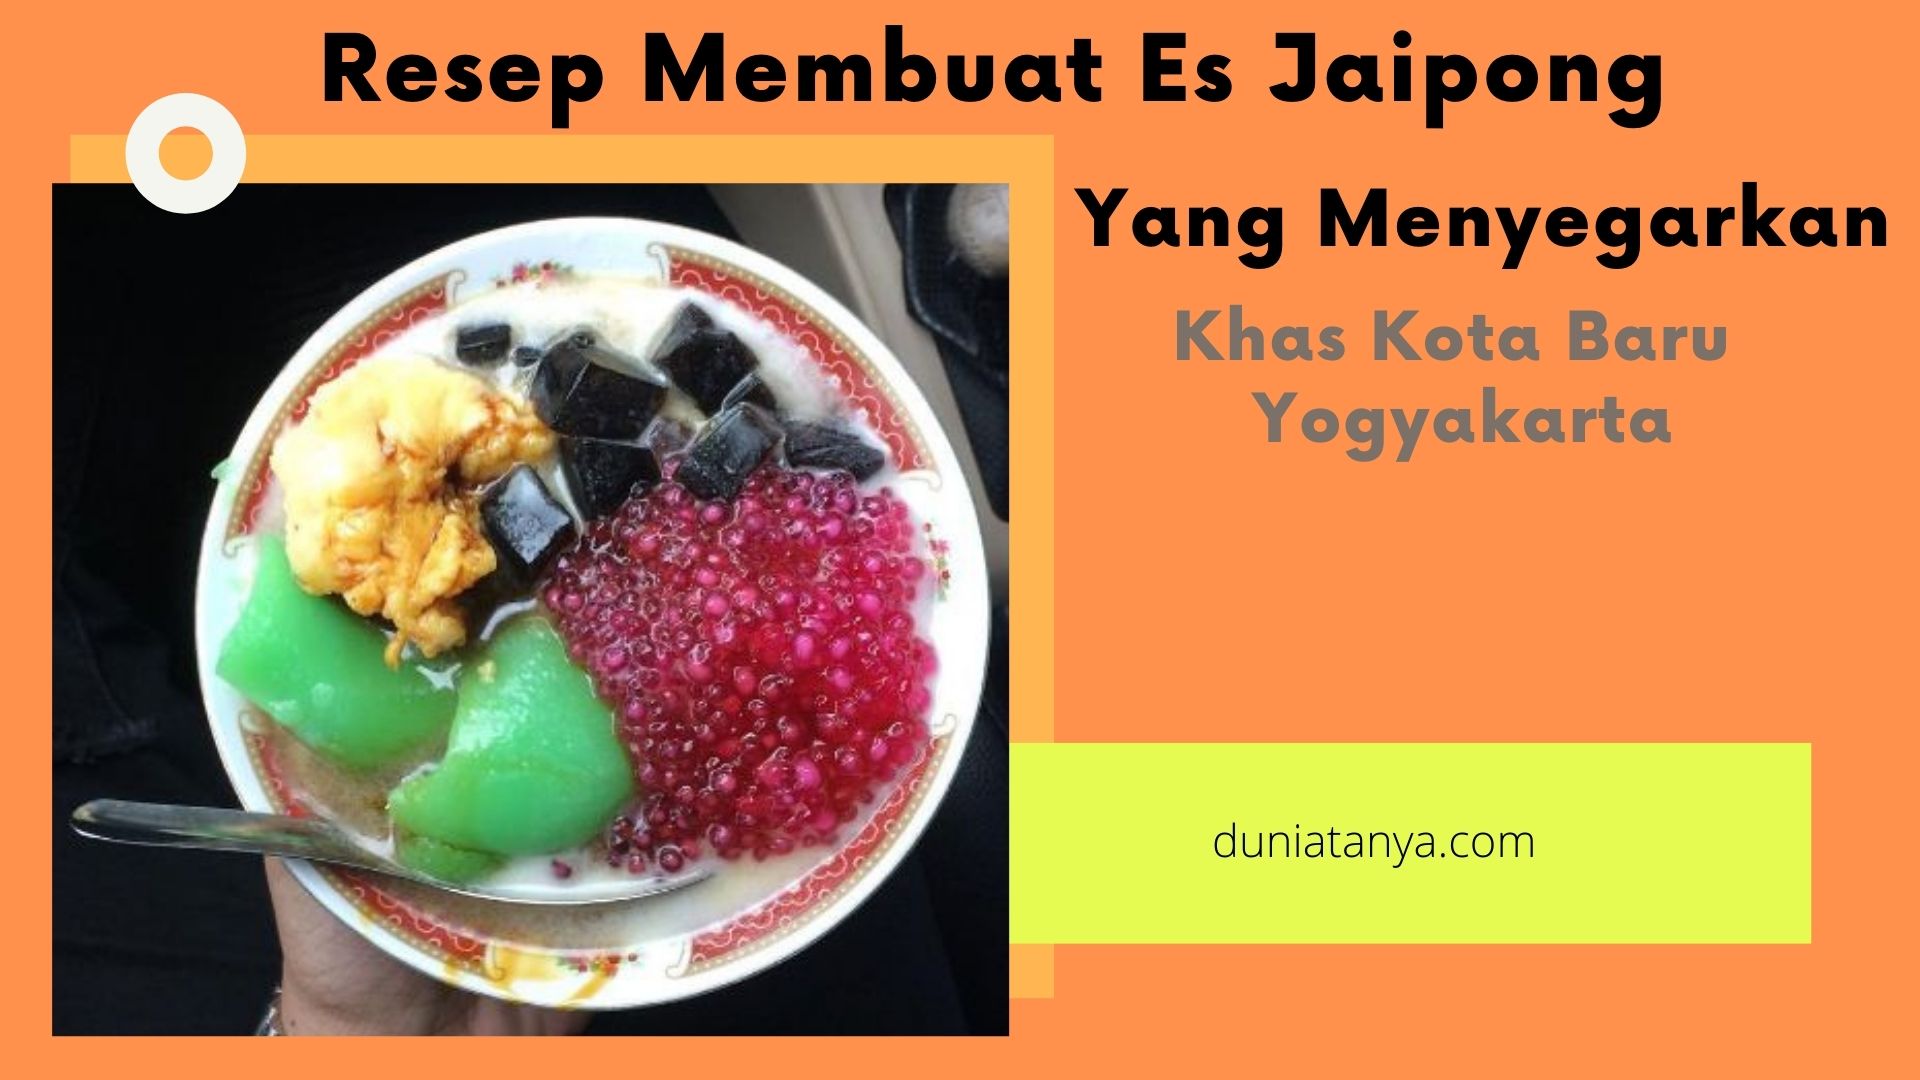 You are currently viewing Resep Membuat Es Jaipong Yang Menyegarkan Khas Kota Baru Yogyakarta